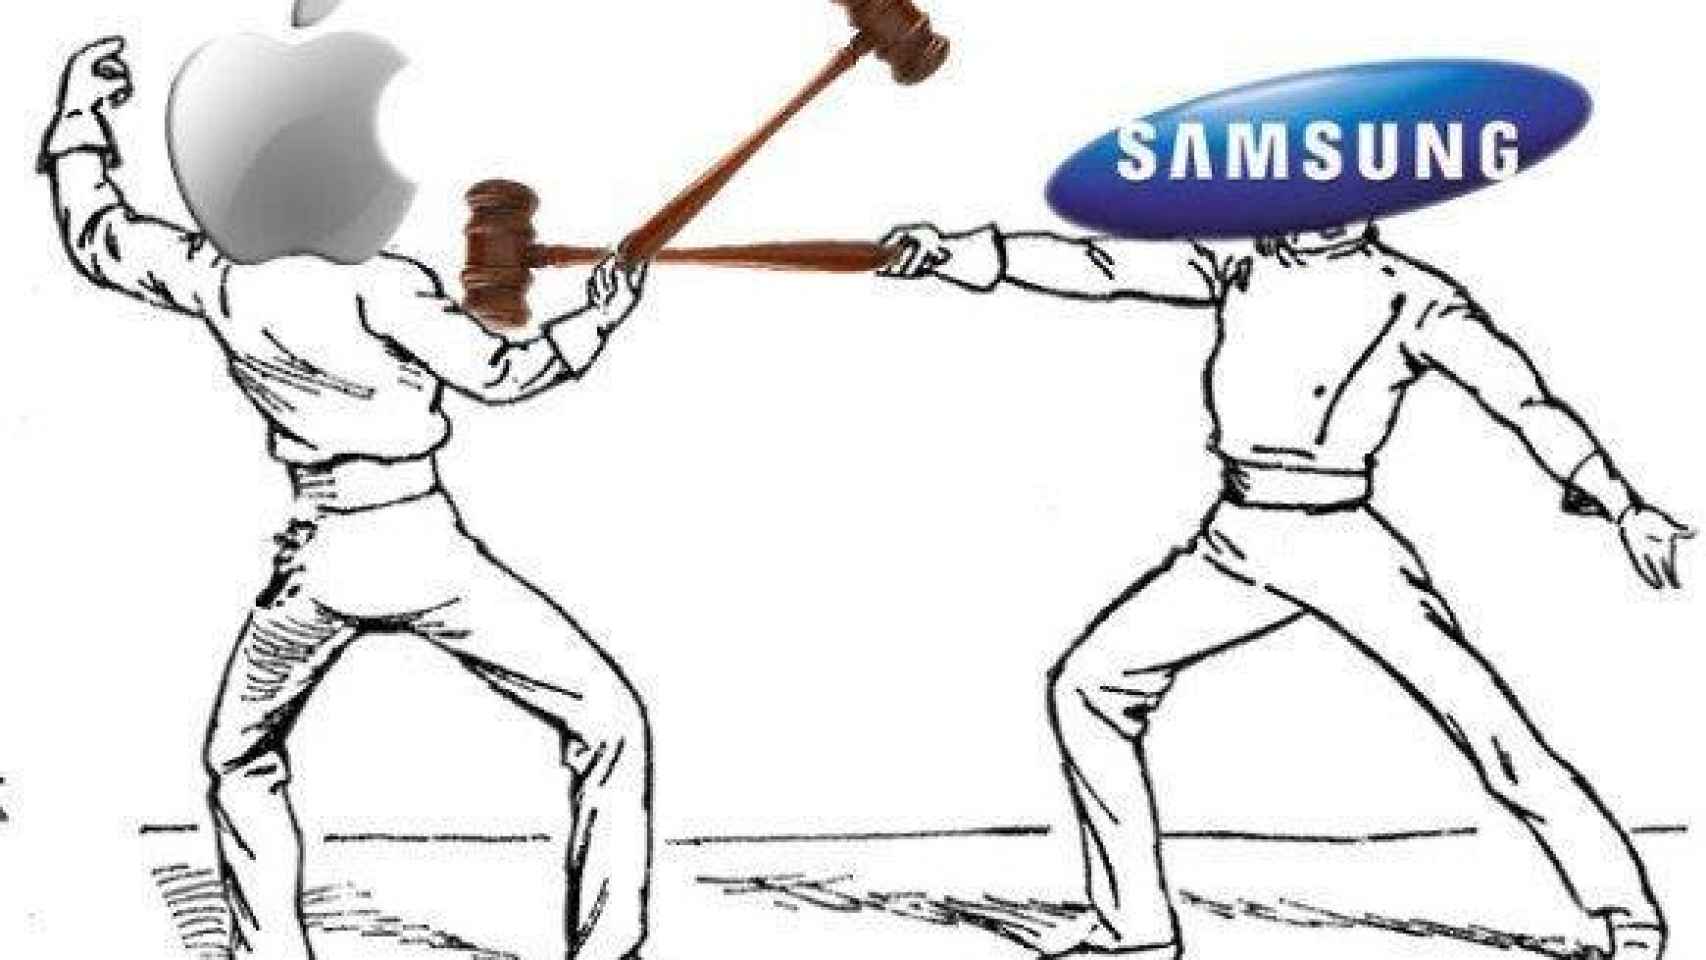 Dos victorias en los tribunales por parte de Apple ante Samsung: ¿Estamos ante una guerra sin sentido?